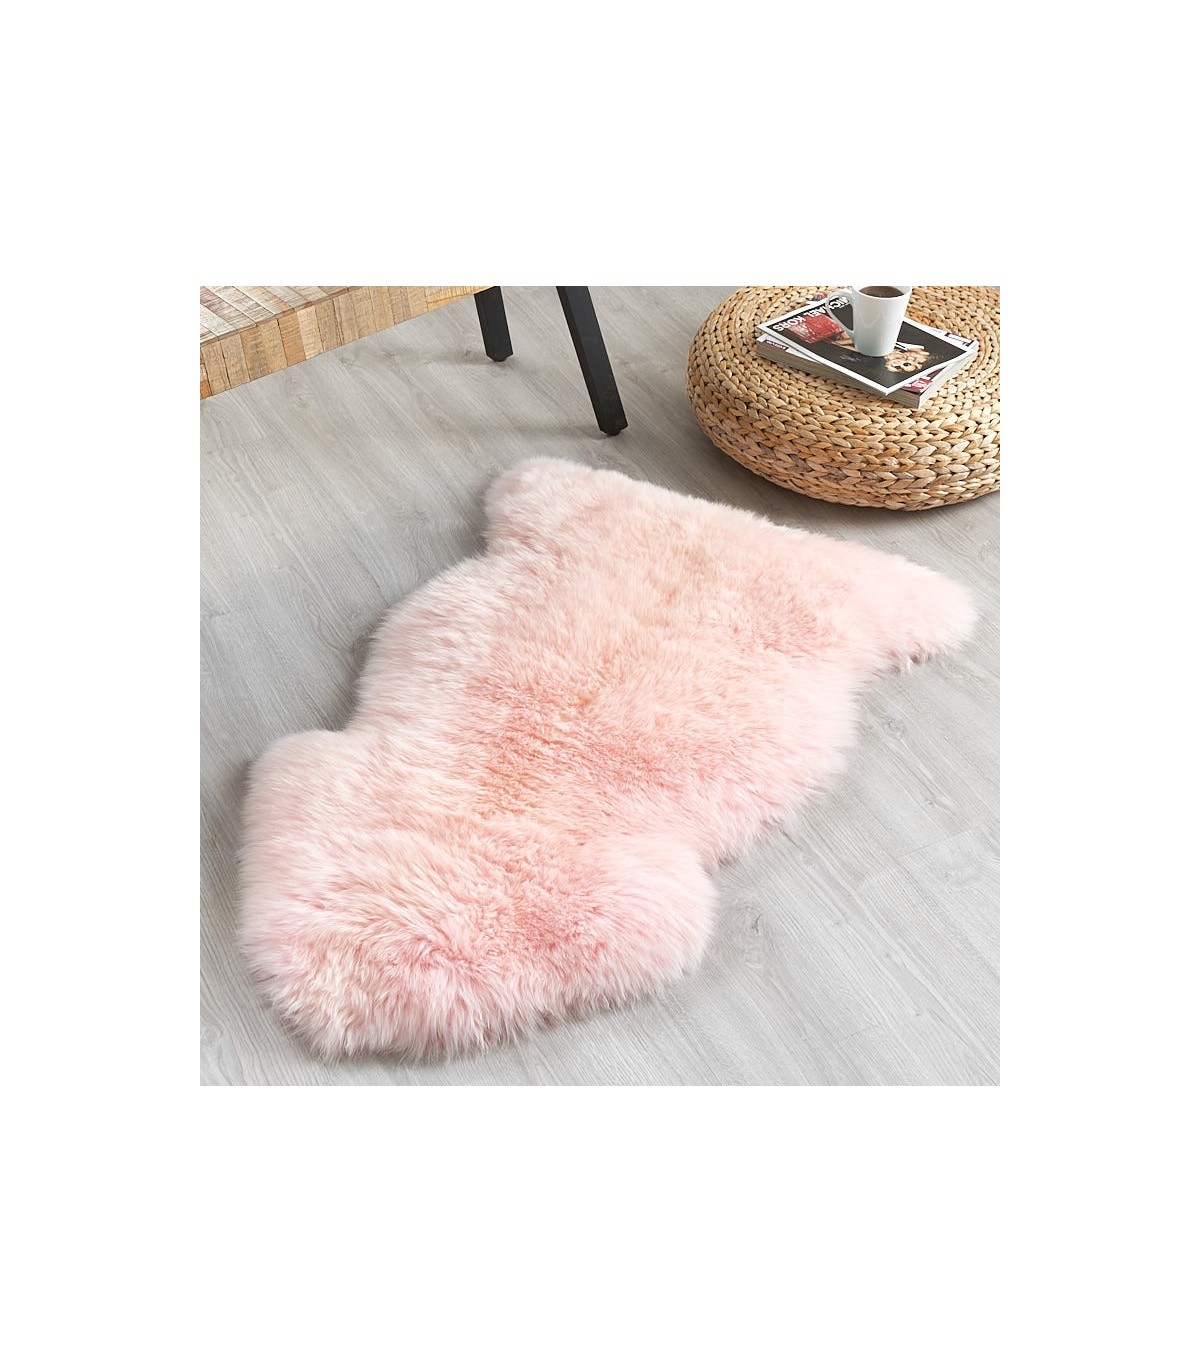 Candy Floss Pink Sheepskin Rug 2x3 5, Light Pink Fur Rug